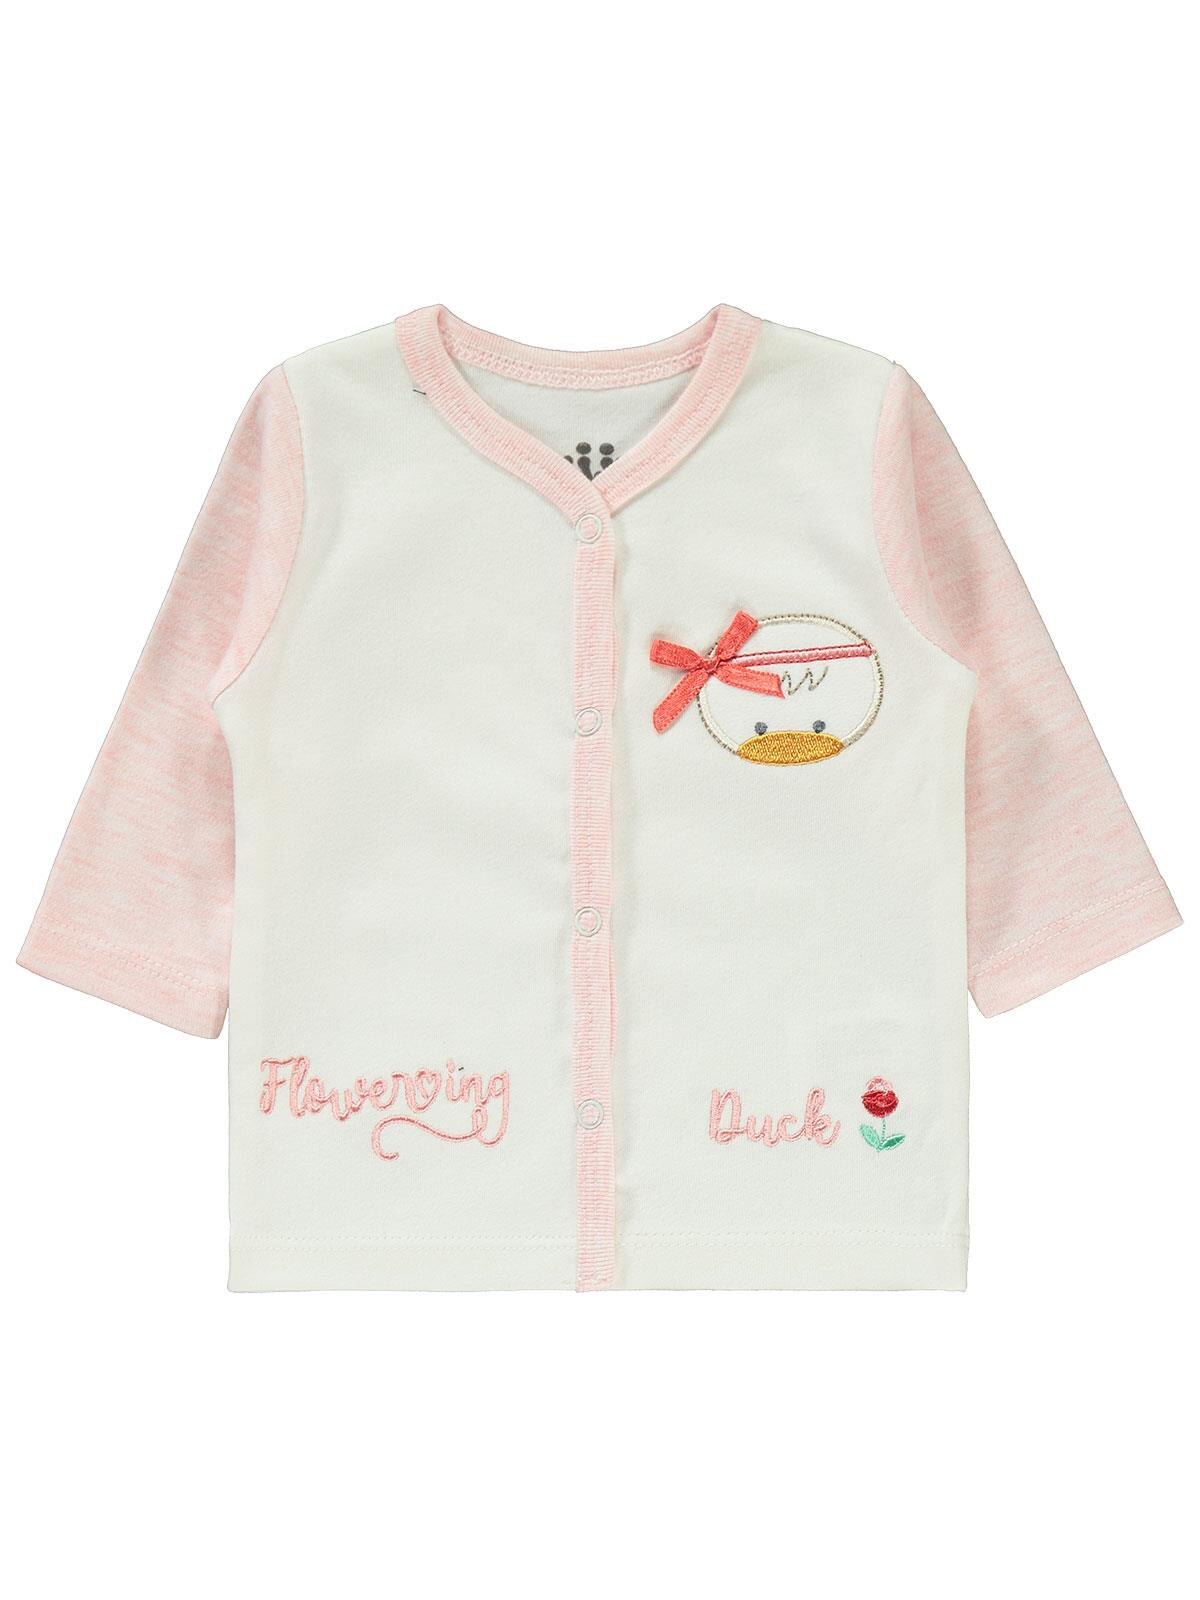 Kujju baby pige kæmmet bomuldspyjamas sæt nyfødt 3-6 måneder lyserød farve 100%  bomuld langærmet